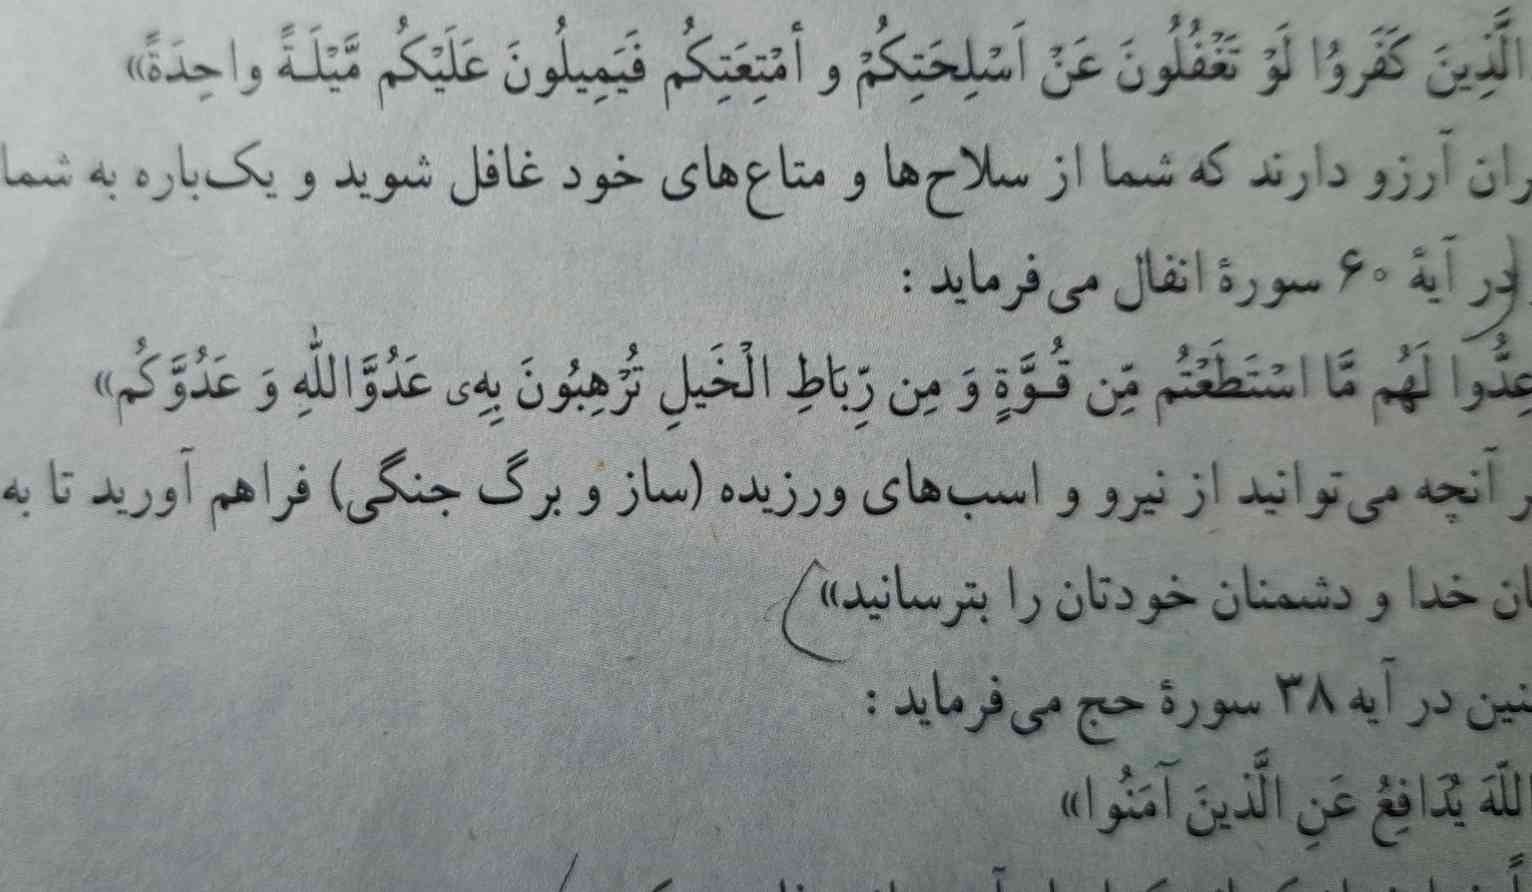 تو این قسمت باید عربیهارم حفظ باشیم یا لازم نیست؟
تاج میدم